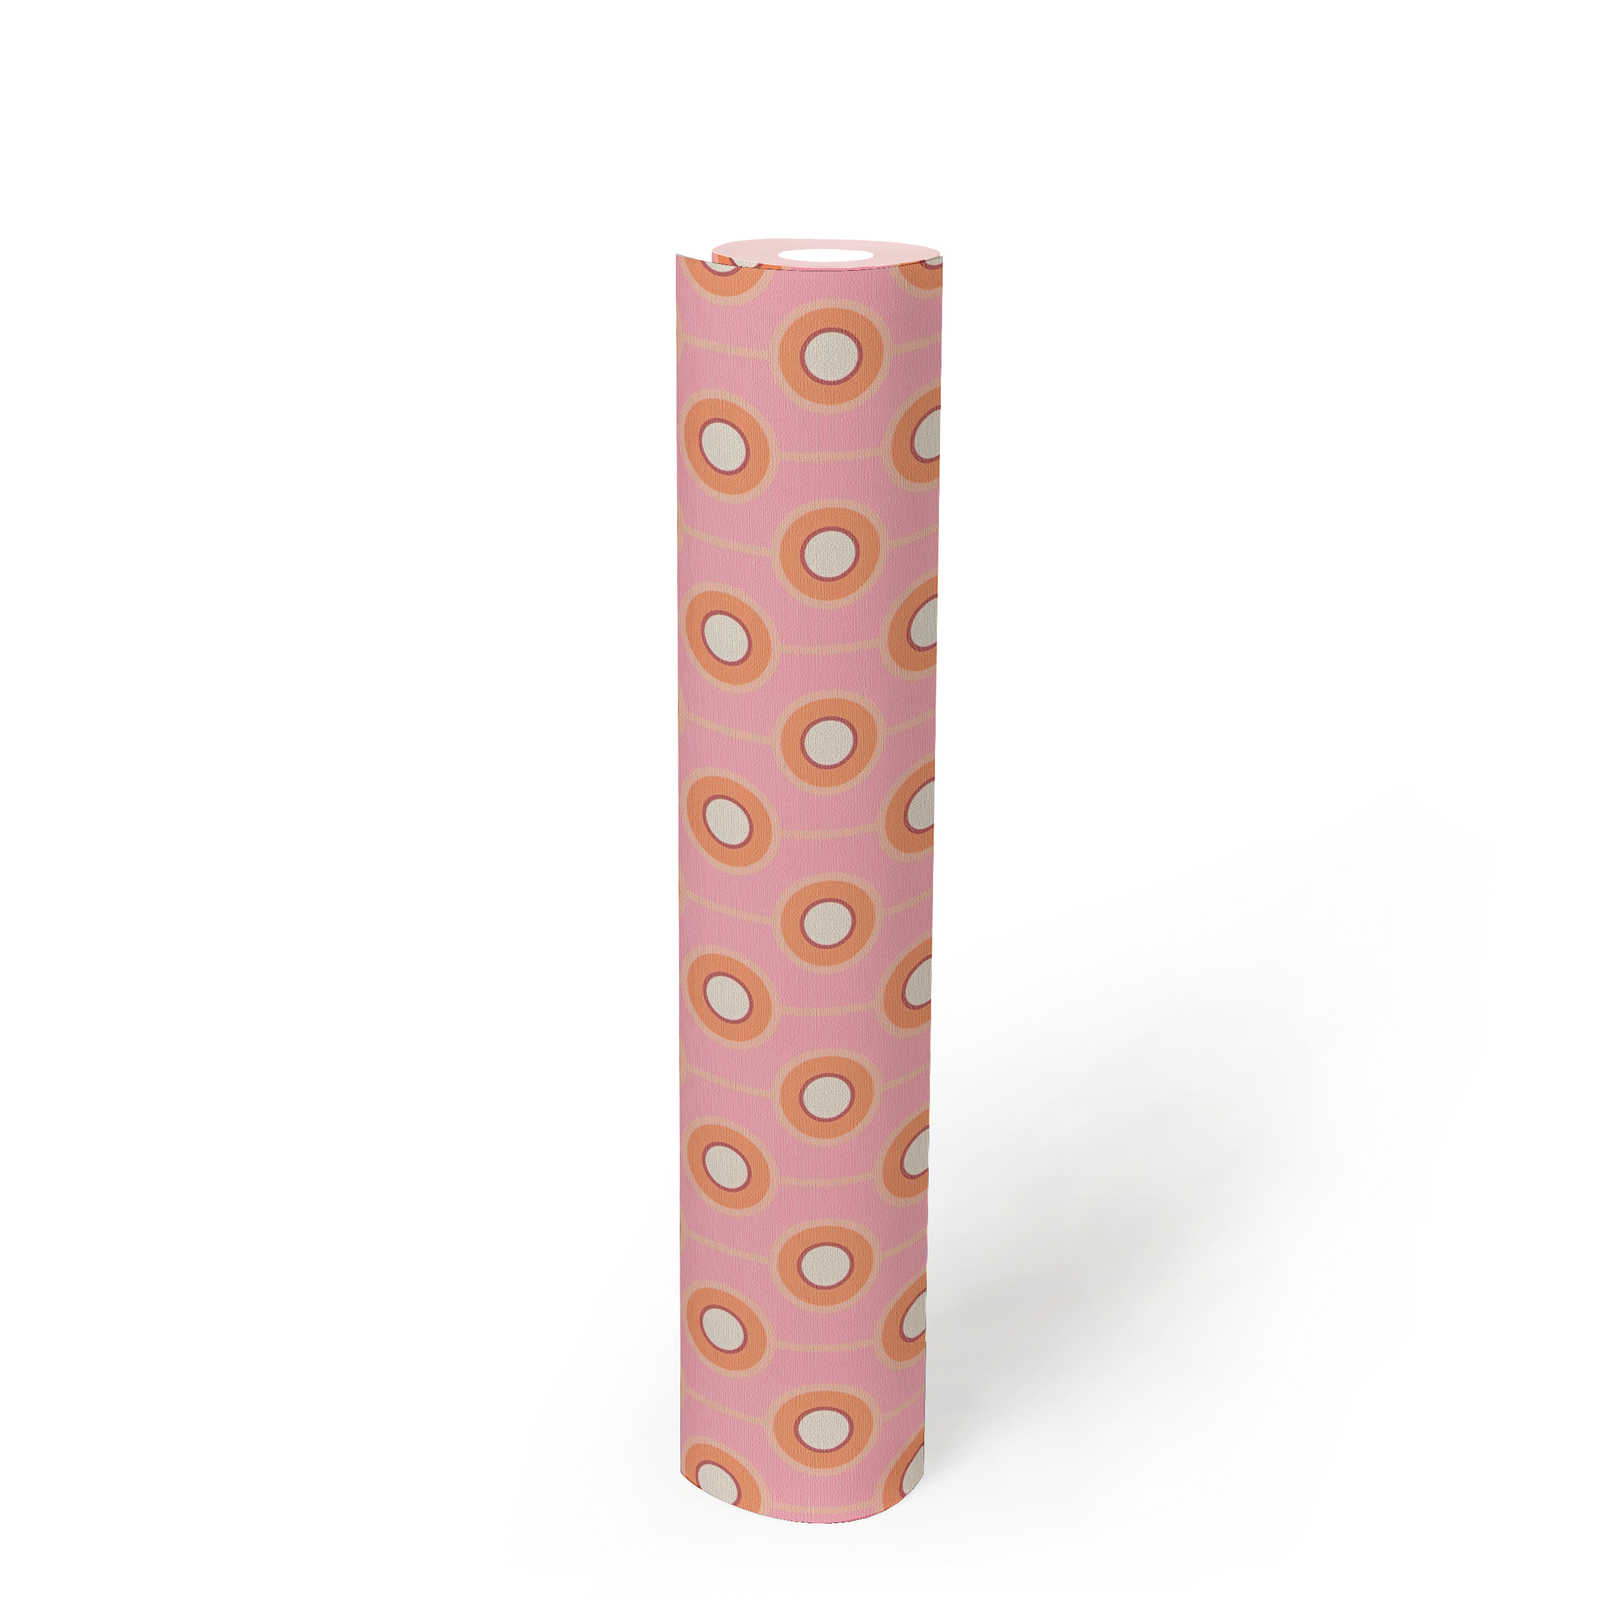             papier peint en papier légèrement structuré avec motifs circulaires - rose, orange, beige
        